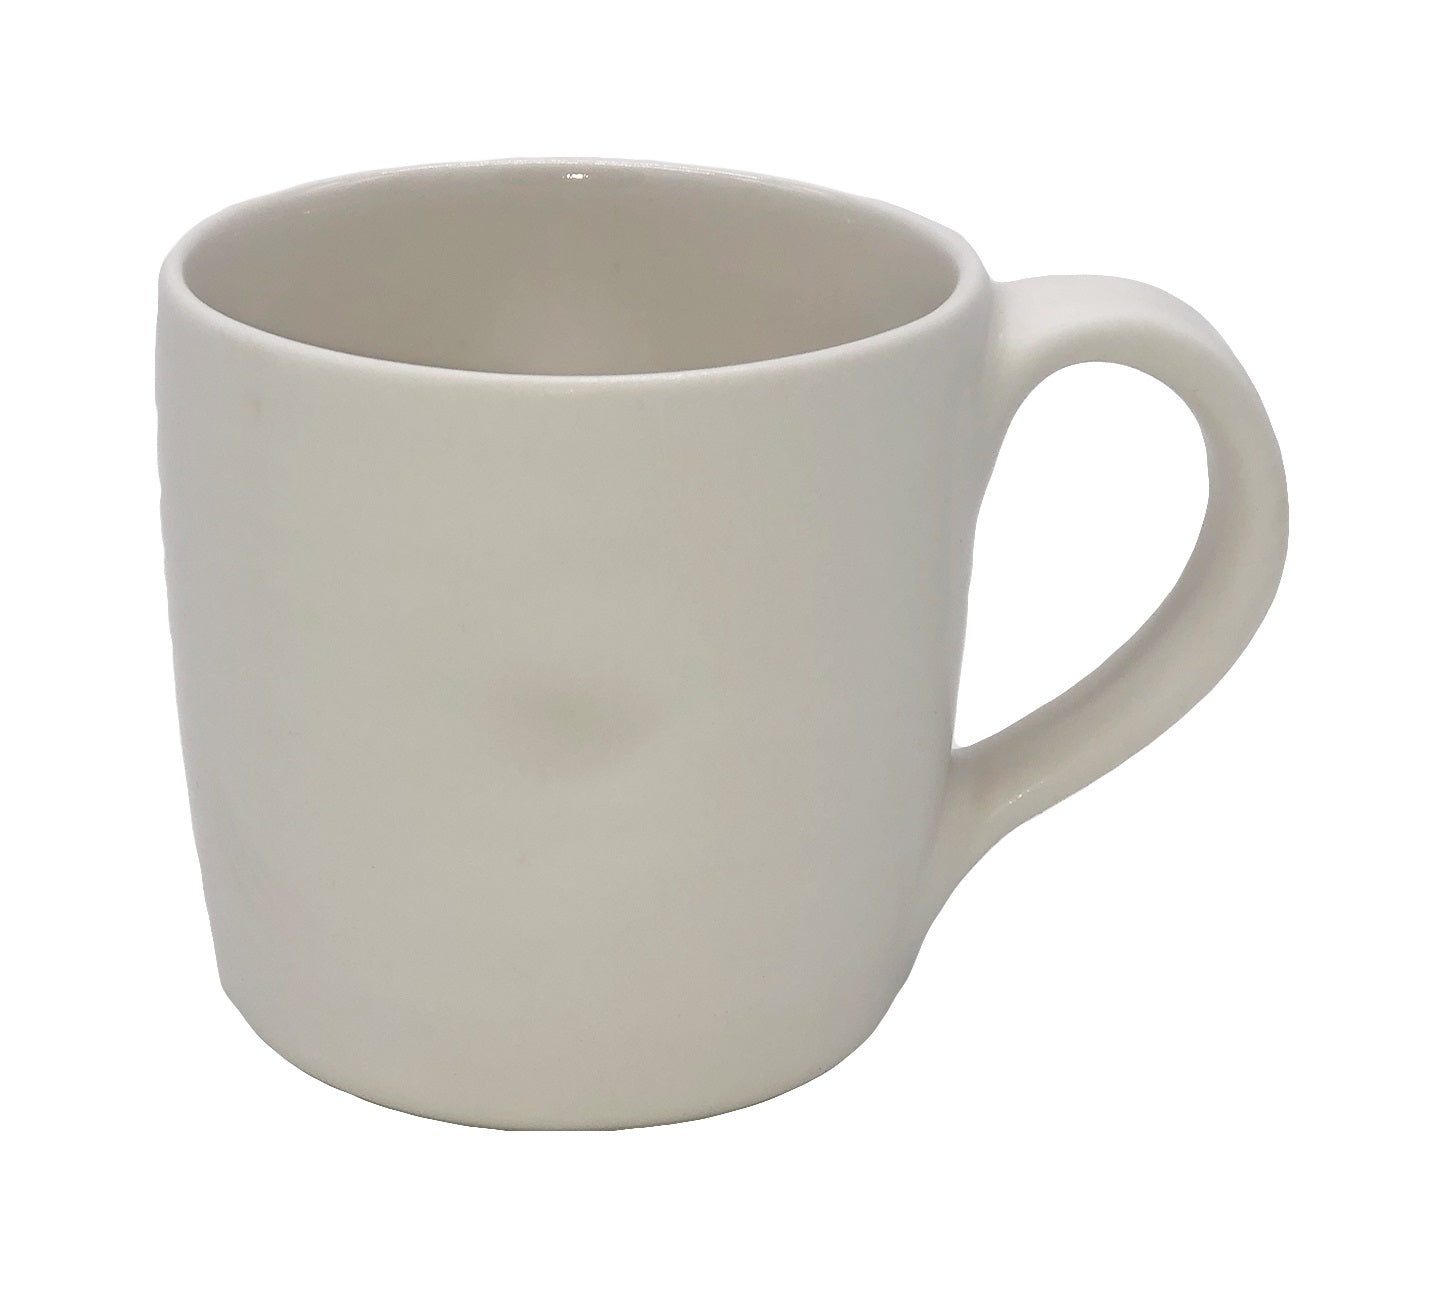 Pinch Mug in White - Set of 4